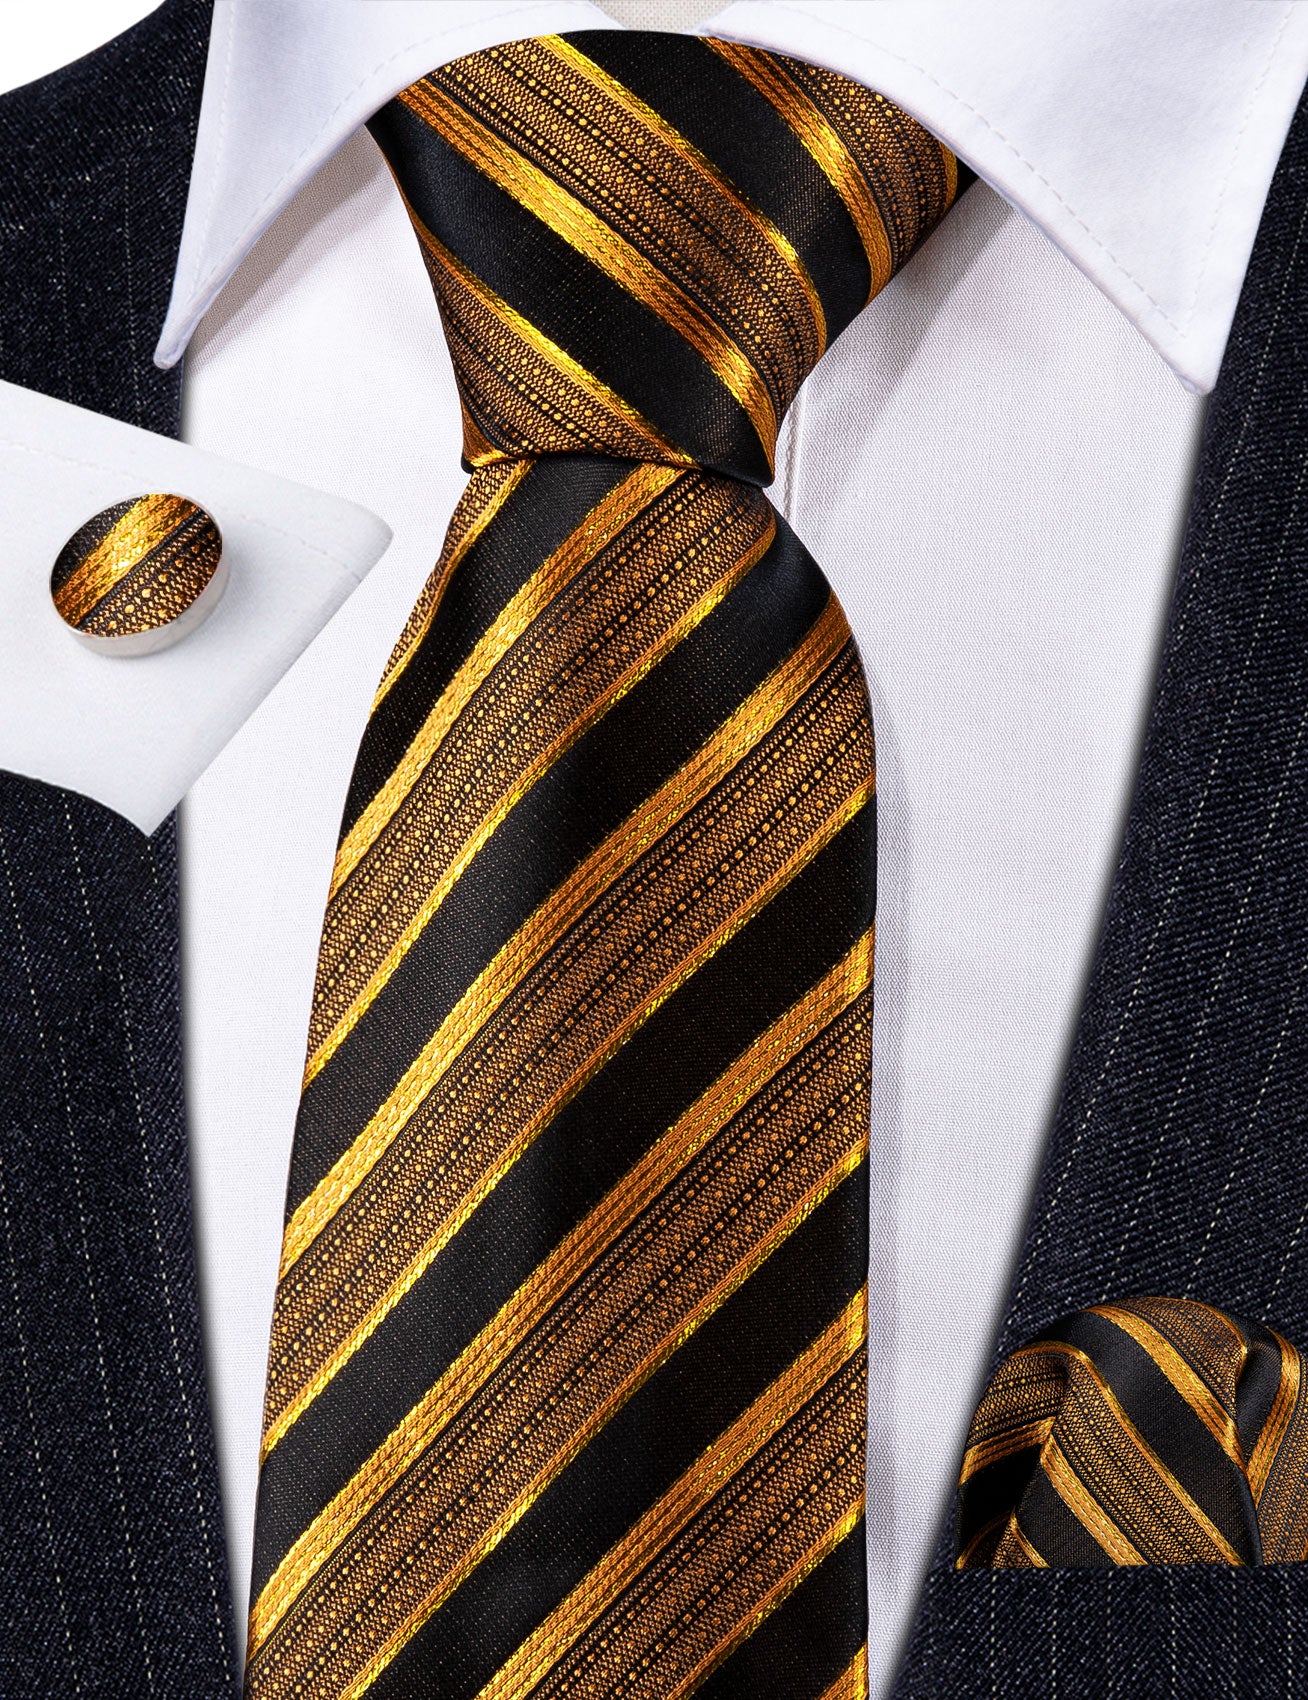 Formal Black Gold Striped Silk Tie Handkerchief Cufflinks Set